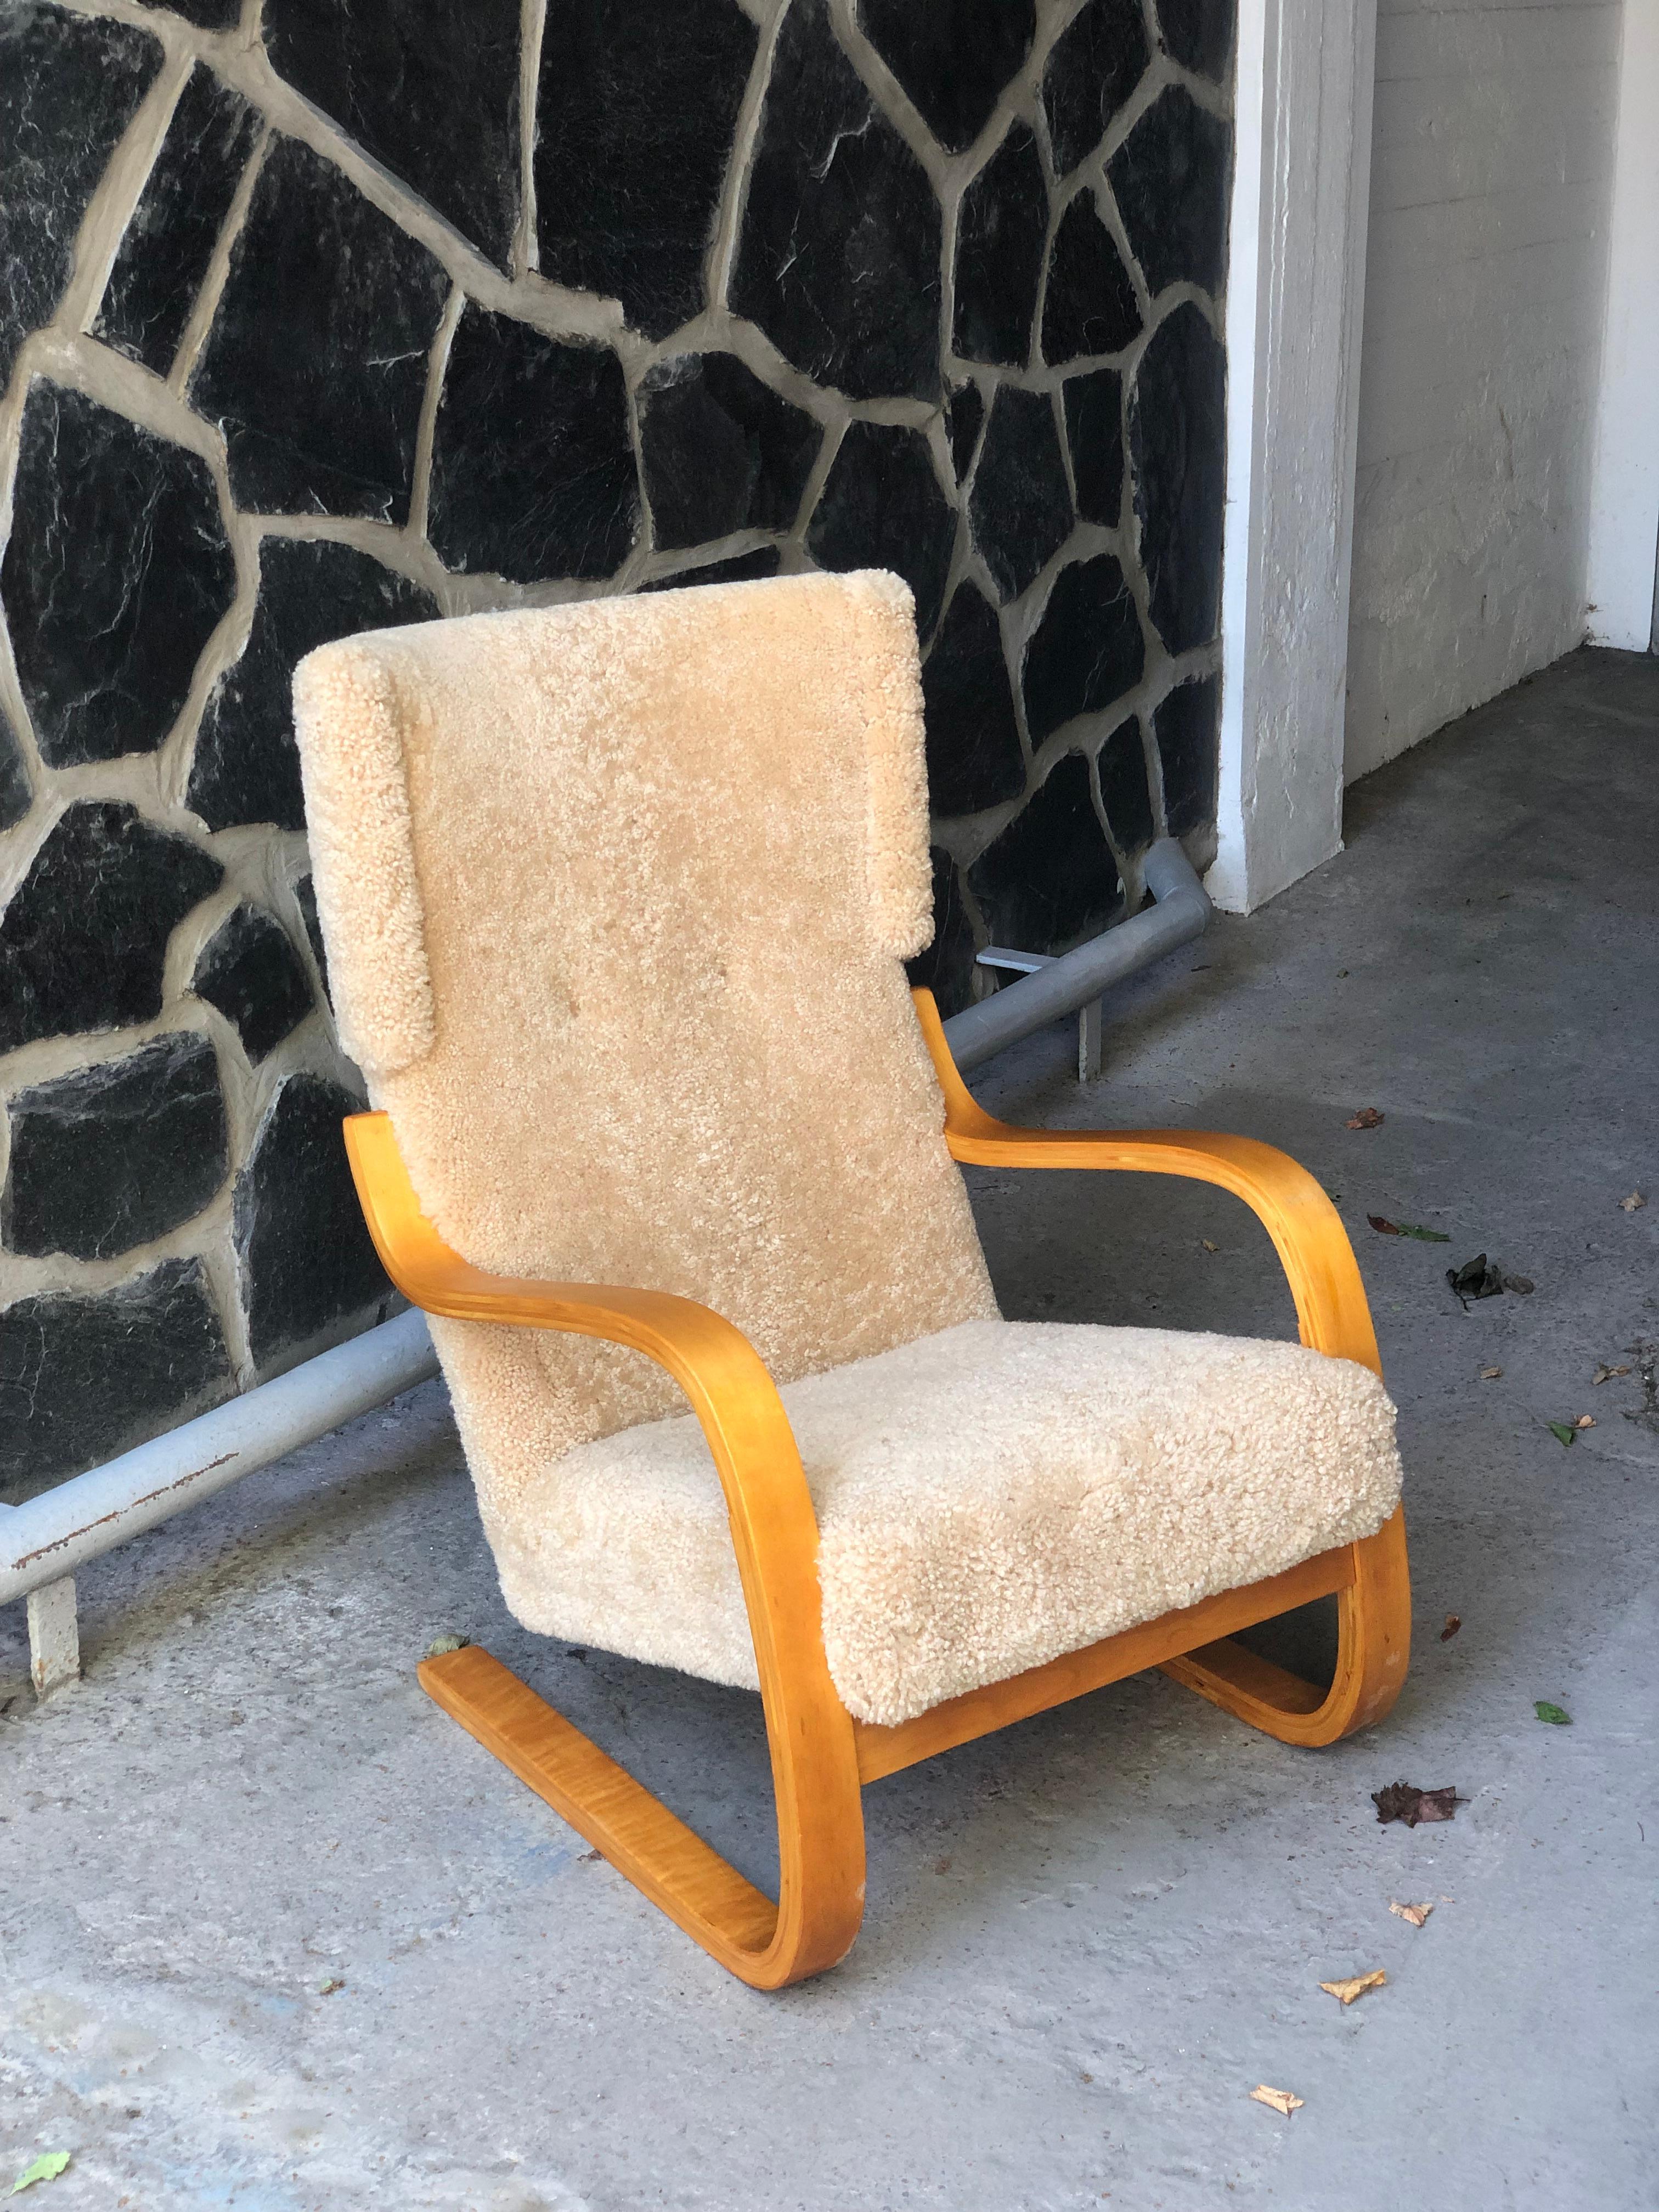 Magnifique fauteuil original d'Alvar Aalto, modèle 401, conçu pour la première fois en 1933. La chaise 401 faisait partie de l'emblématique sanatorium de Paimio, qui a propulsé le nom d'Aalto au rang d'Icone. La chaise elle-même est légère et